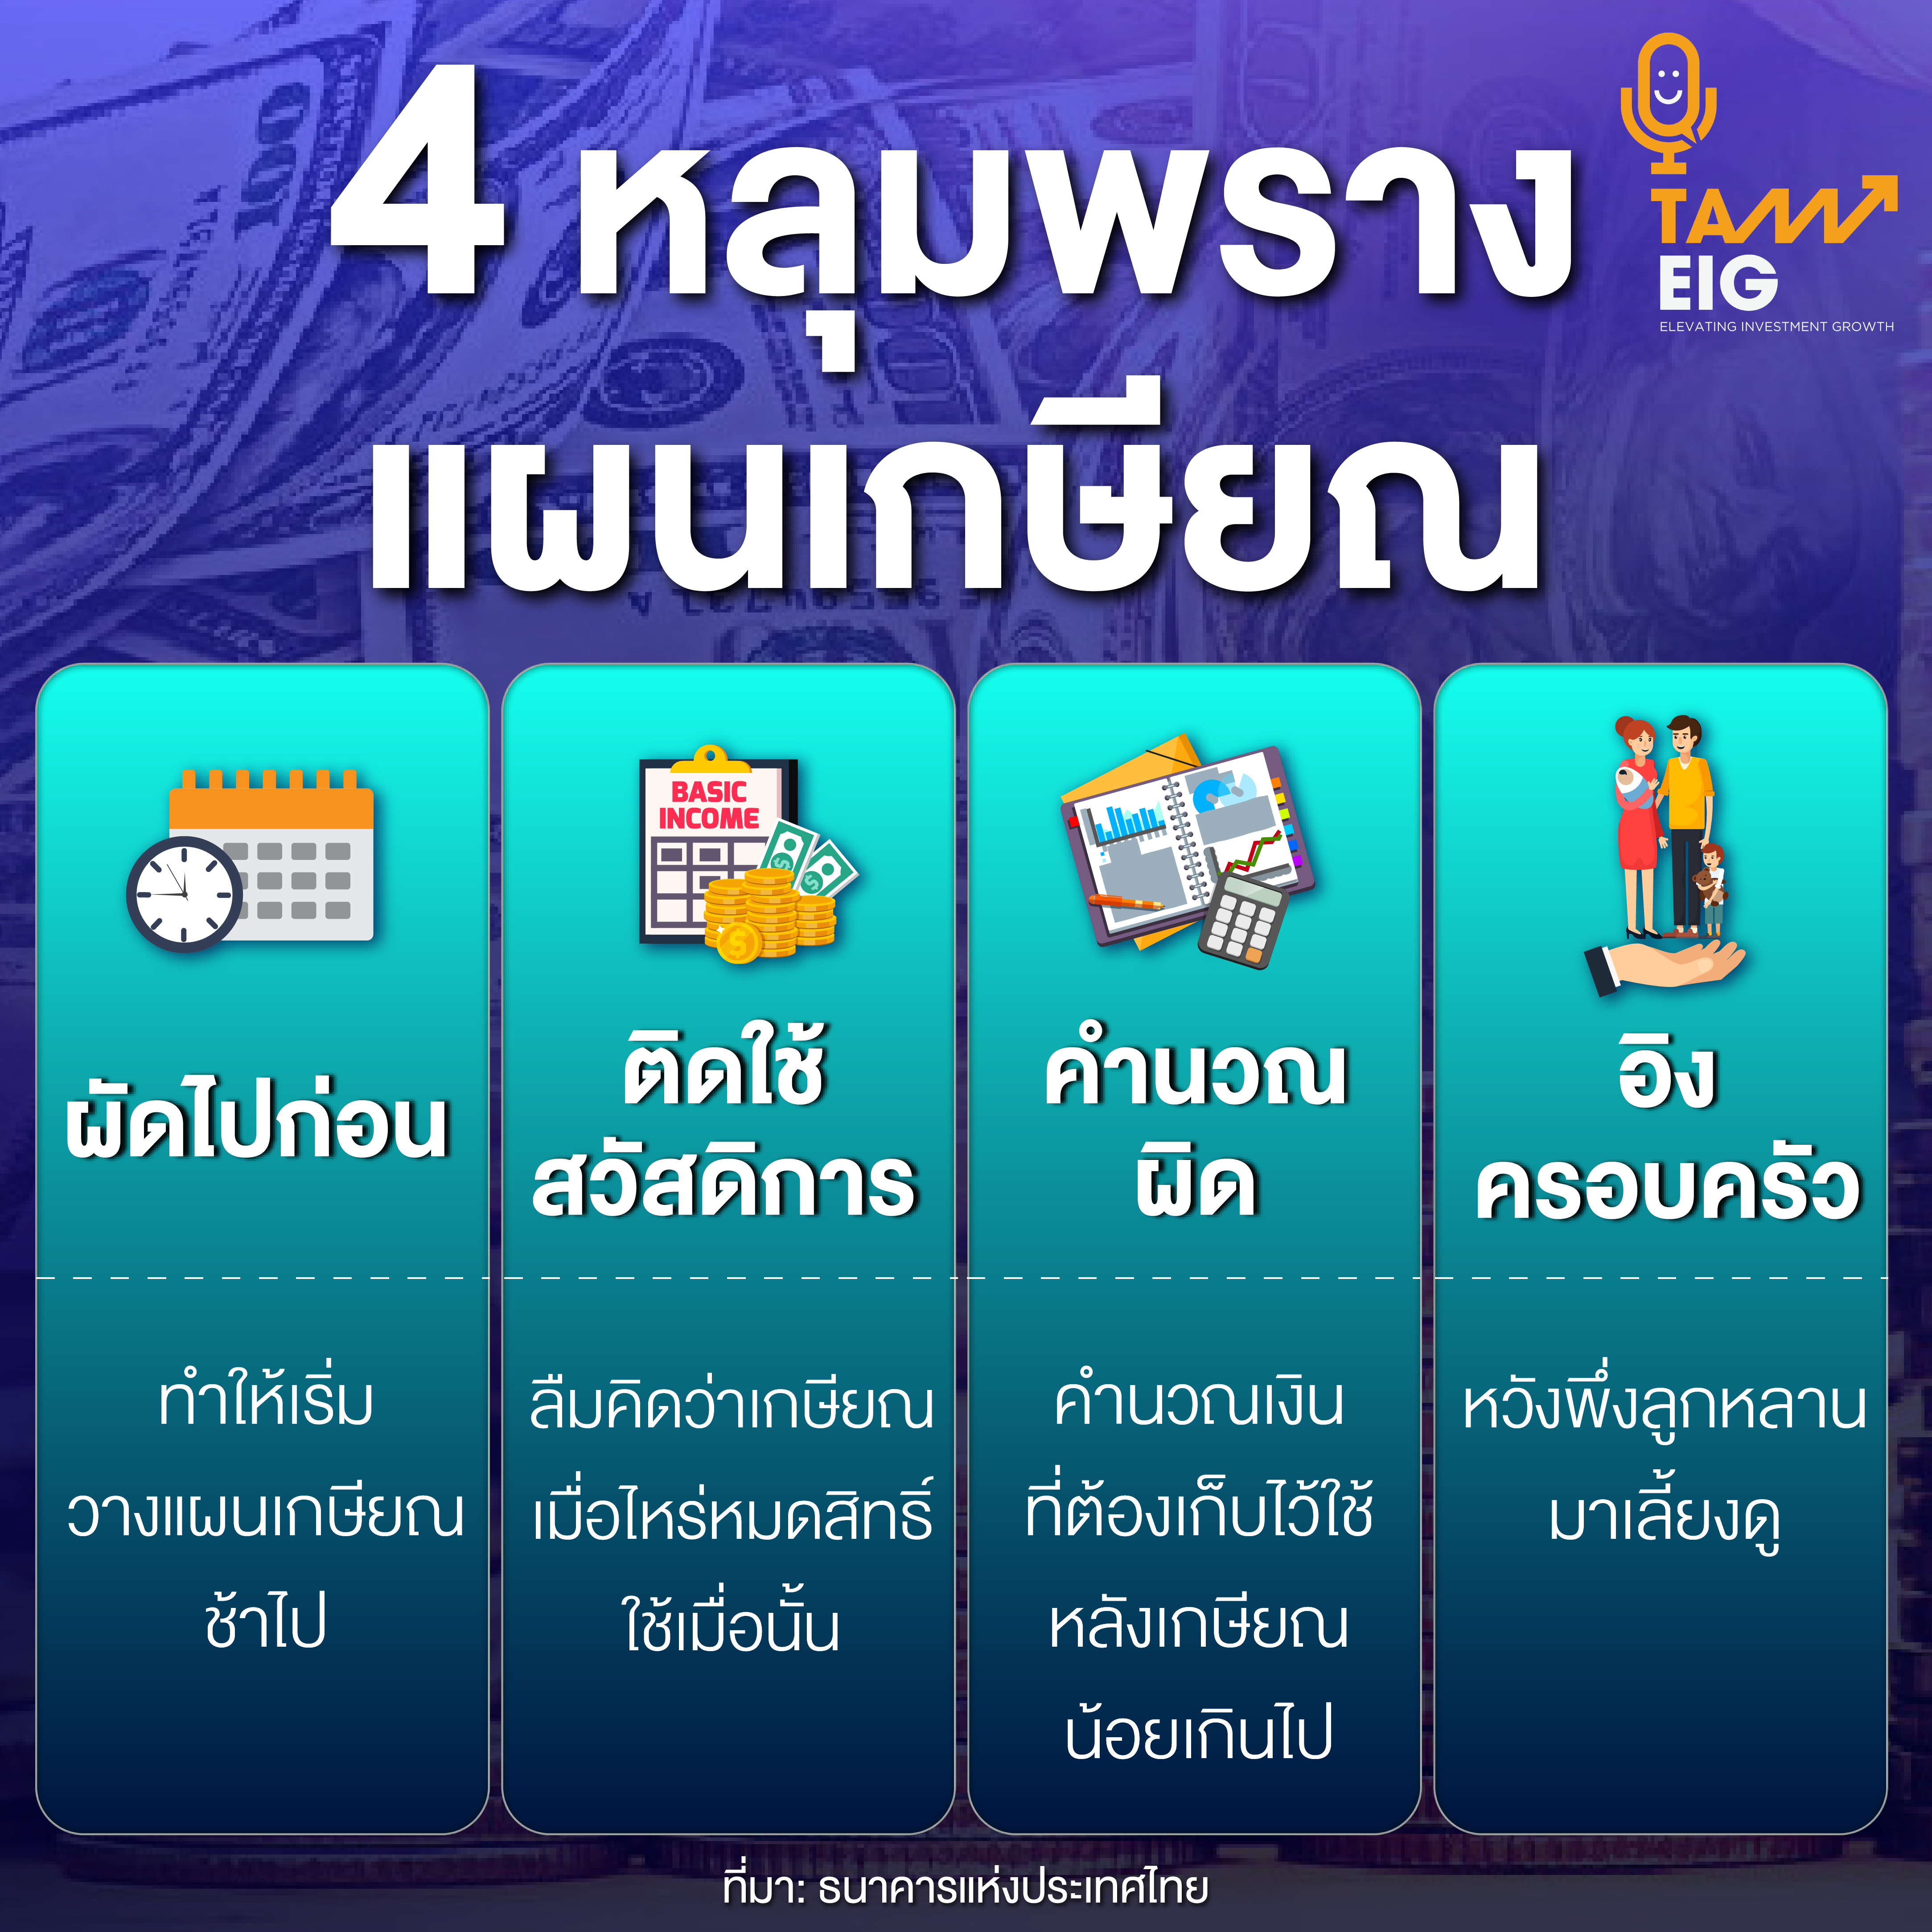 4 หลุมพราง แผนเกษียณ ที่มา: ธนาคารแห่งประเทศไทย